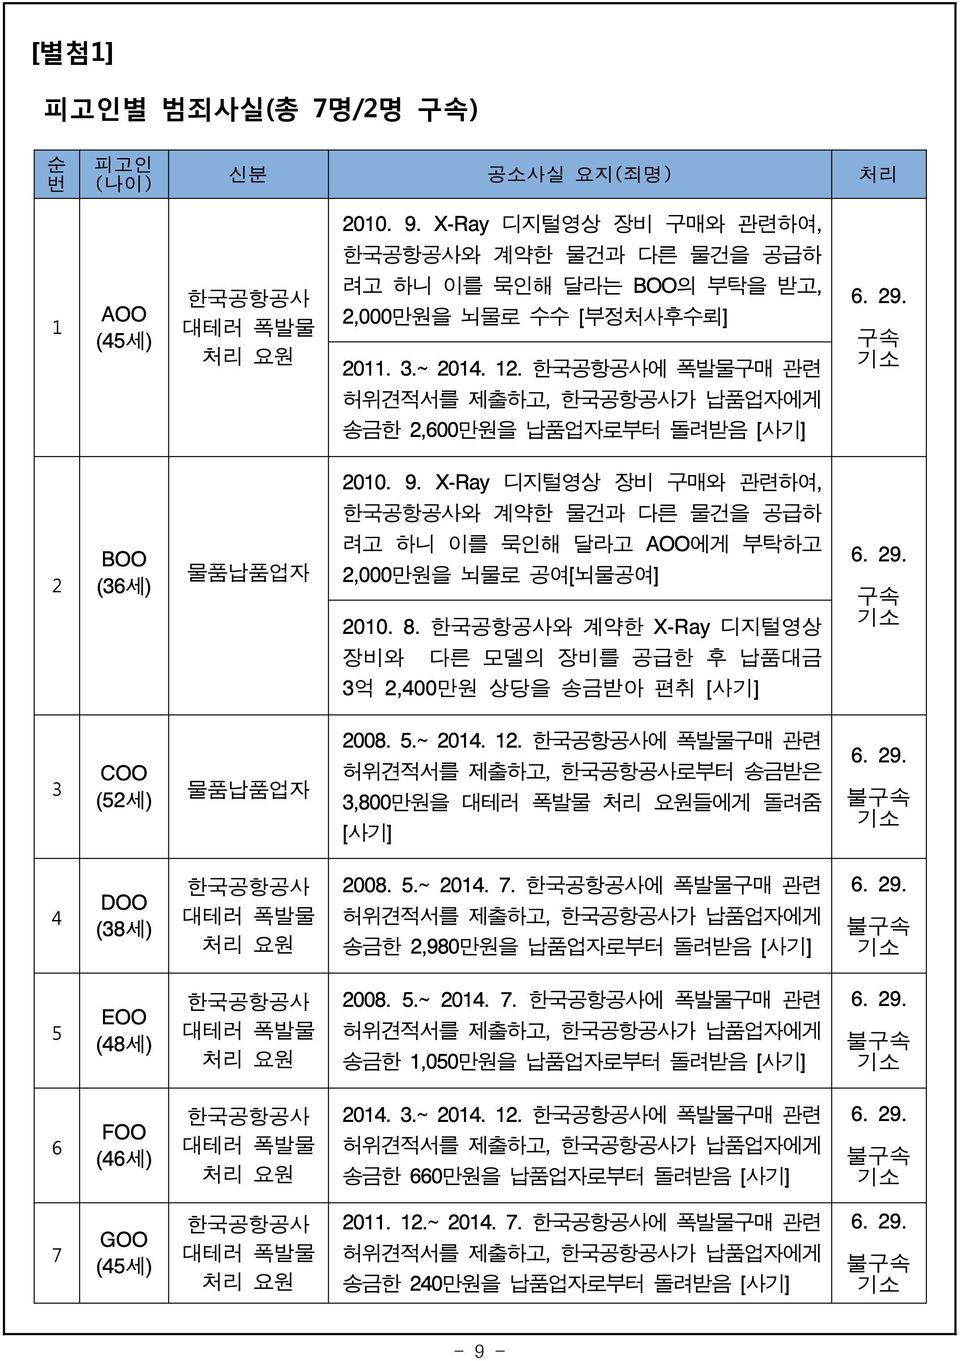 한국공항공사에 폭발물구매 관련 구속 허위견적서를 제출하고, 한국공항공사가 납품업자에게 송금한 2,600만원을 납품업자로부터 돌려받음 [사기] 2010. 9.